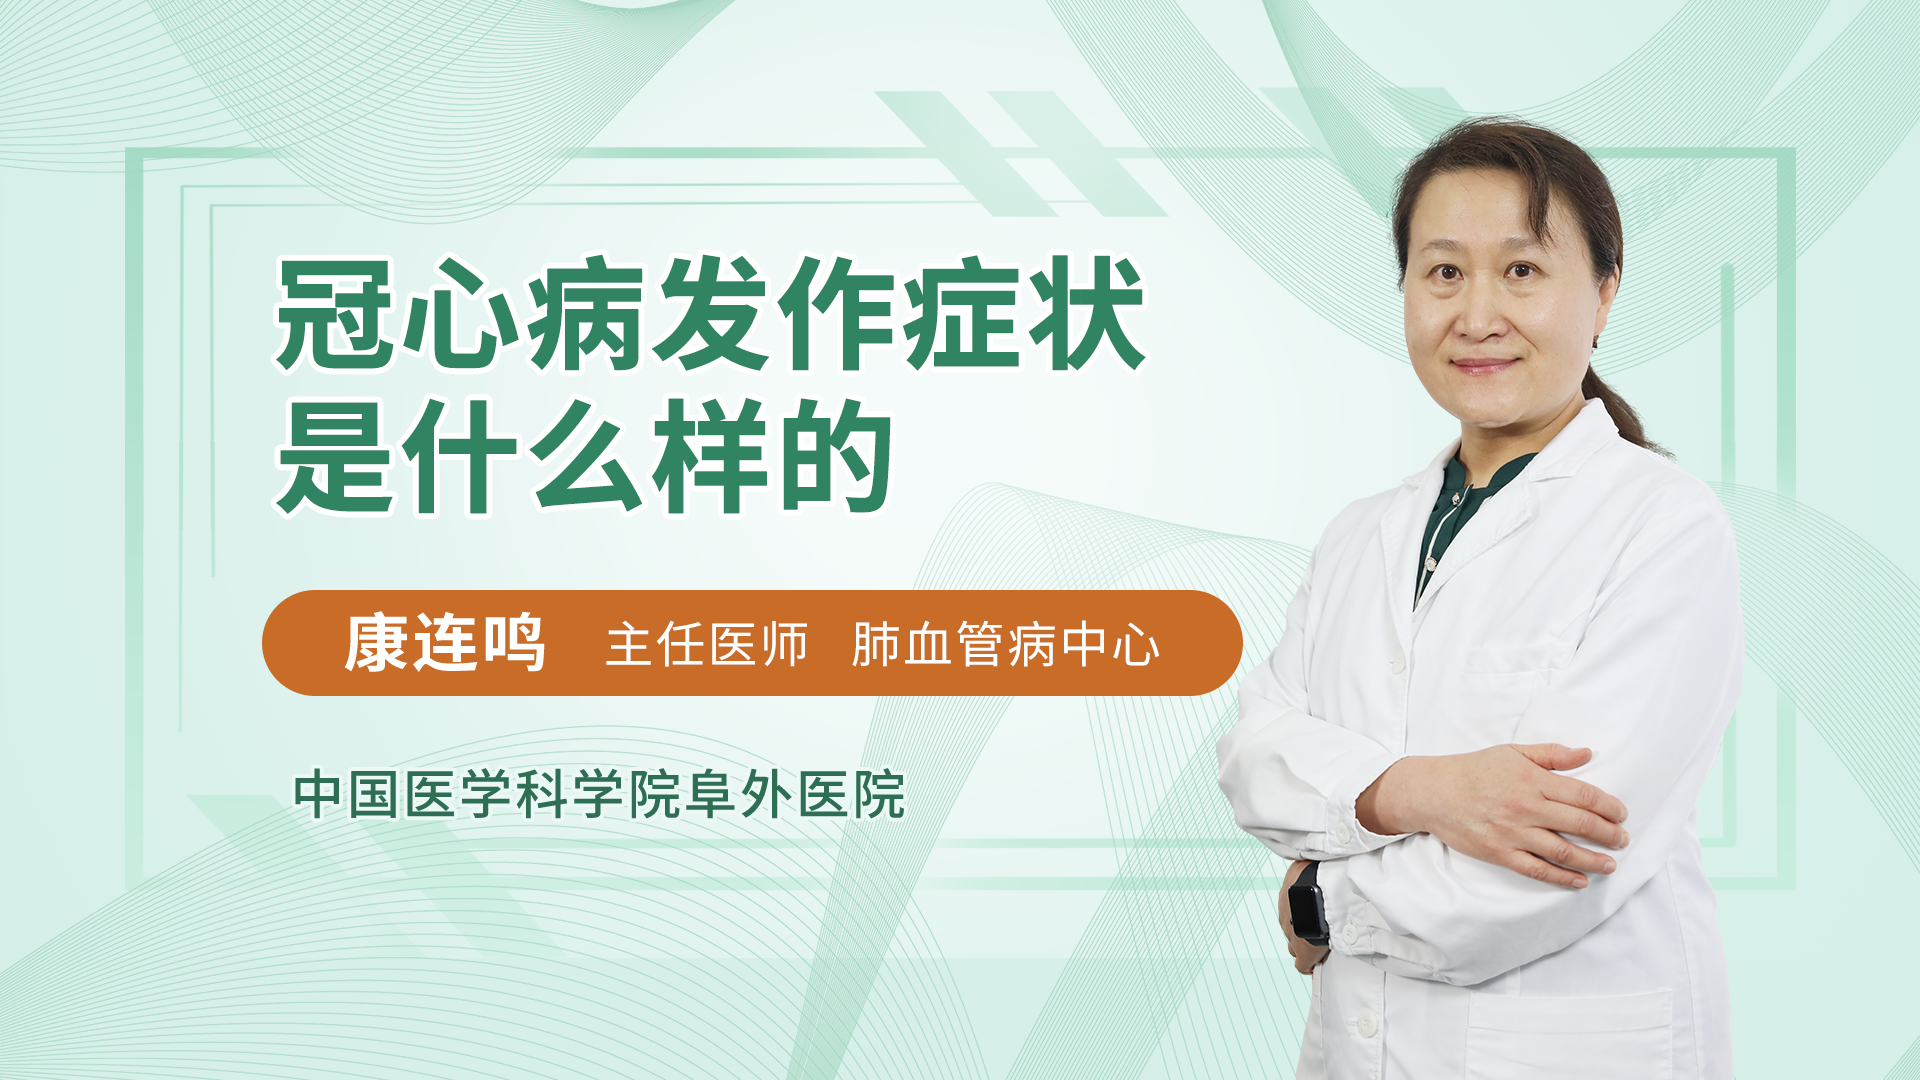 关于北京儿童医院代挂陪诊服务；心脏放了支架，能做核磁检查吗?答案来了!医生讲给冠心病患者听的信息